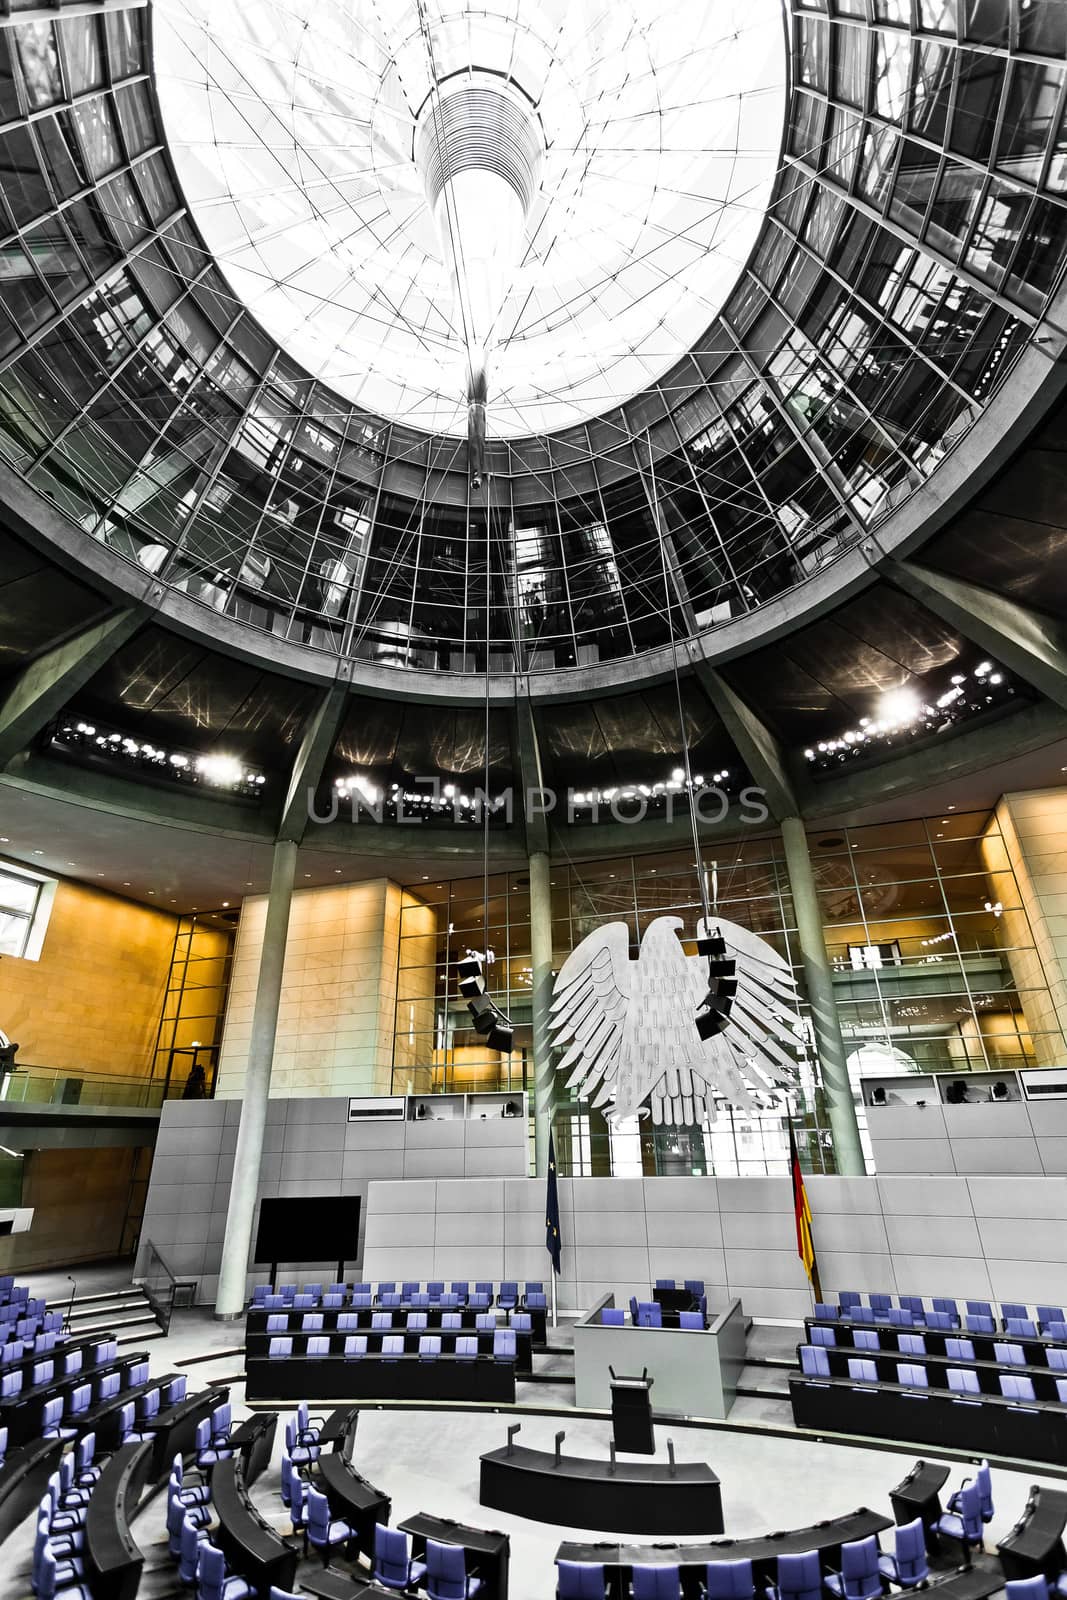 bundestag german parliament room Reichstag berlin germany